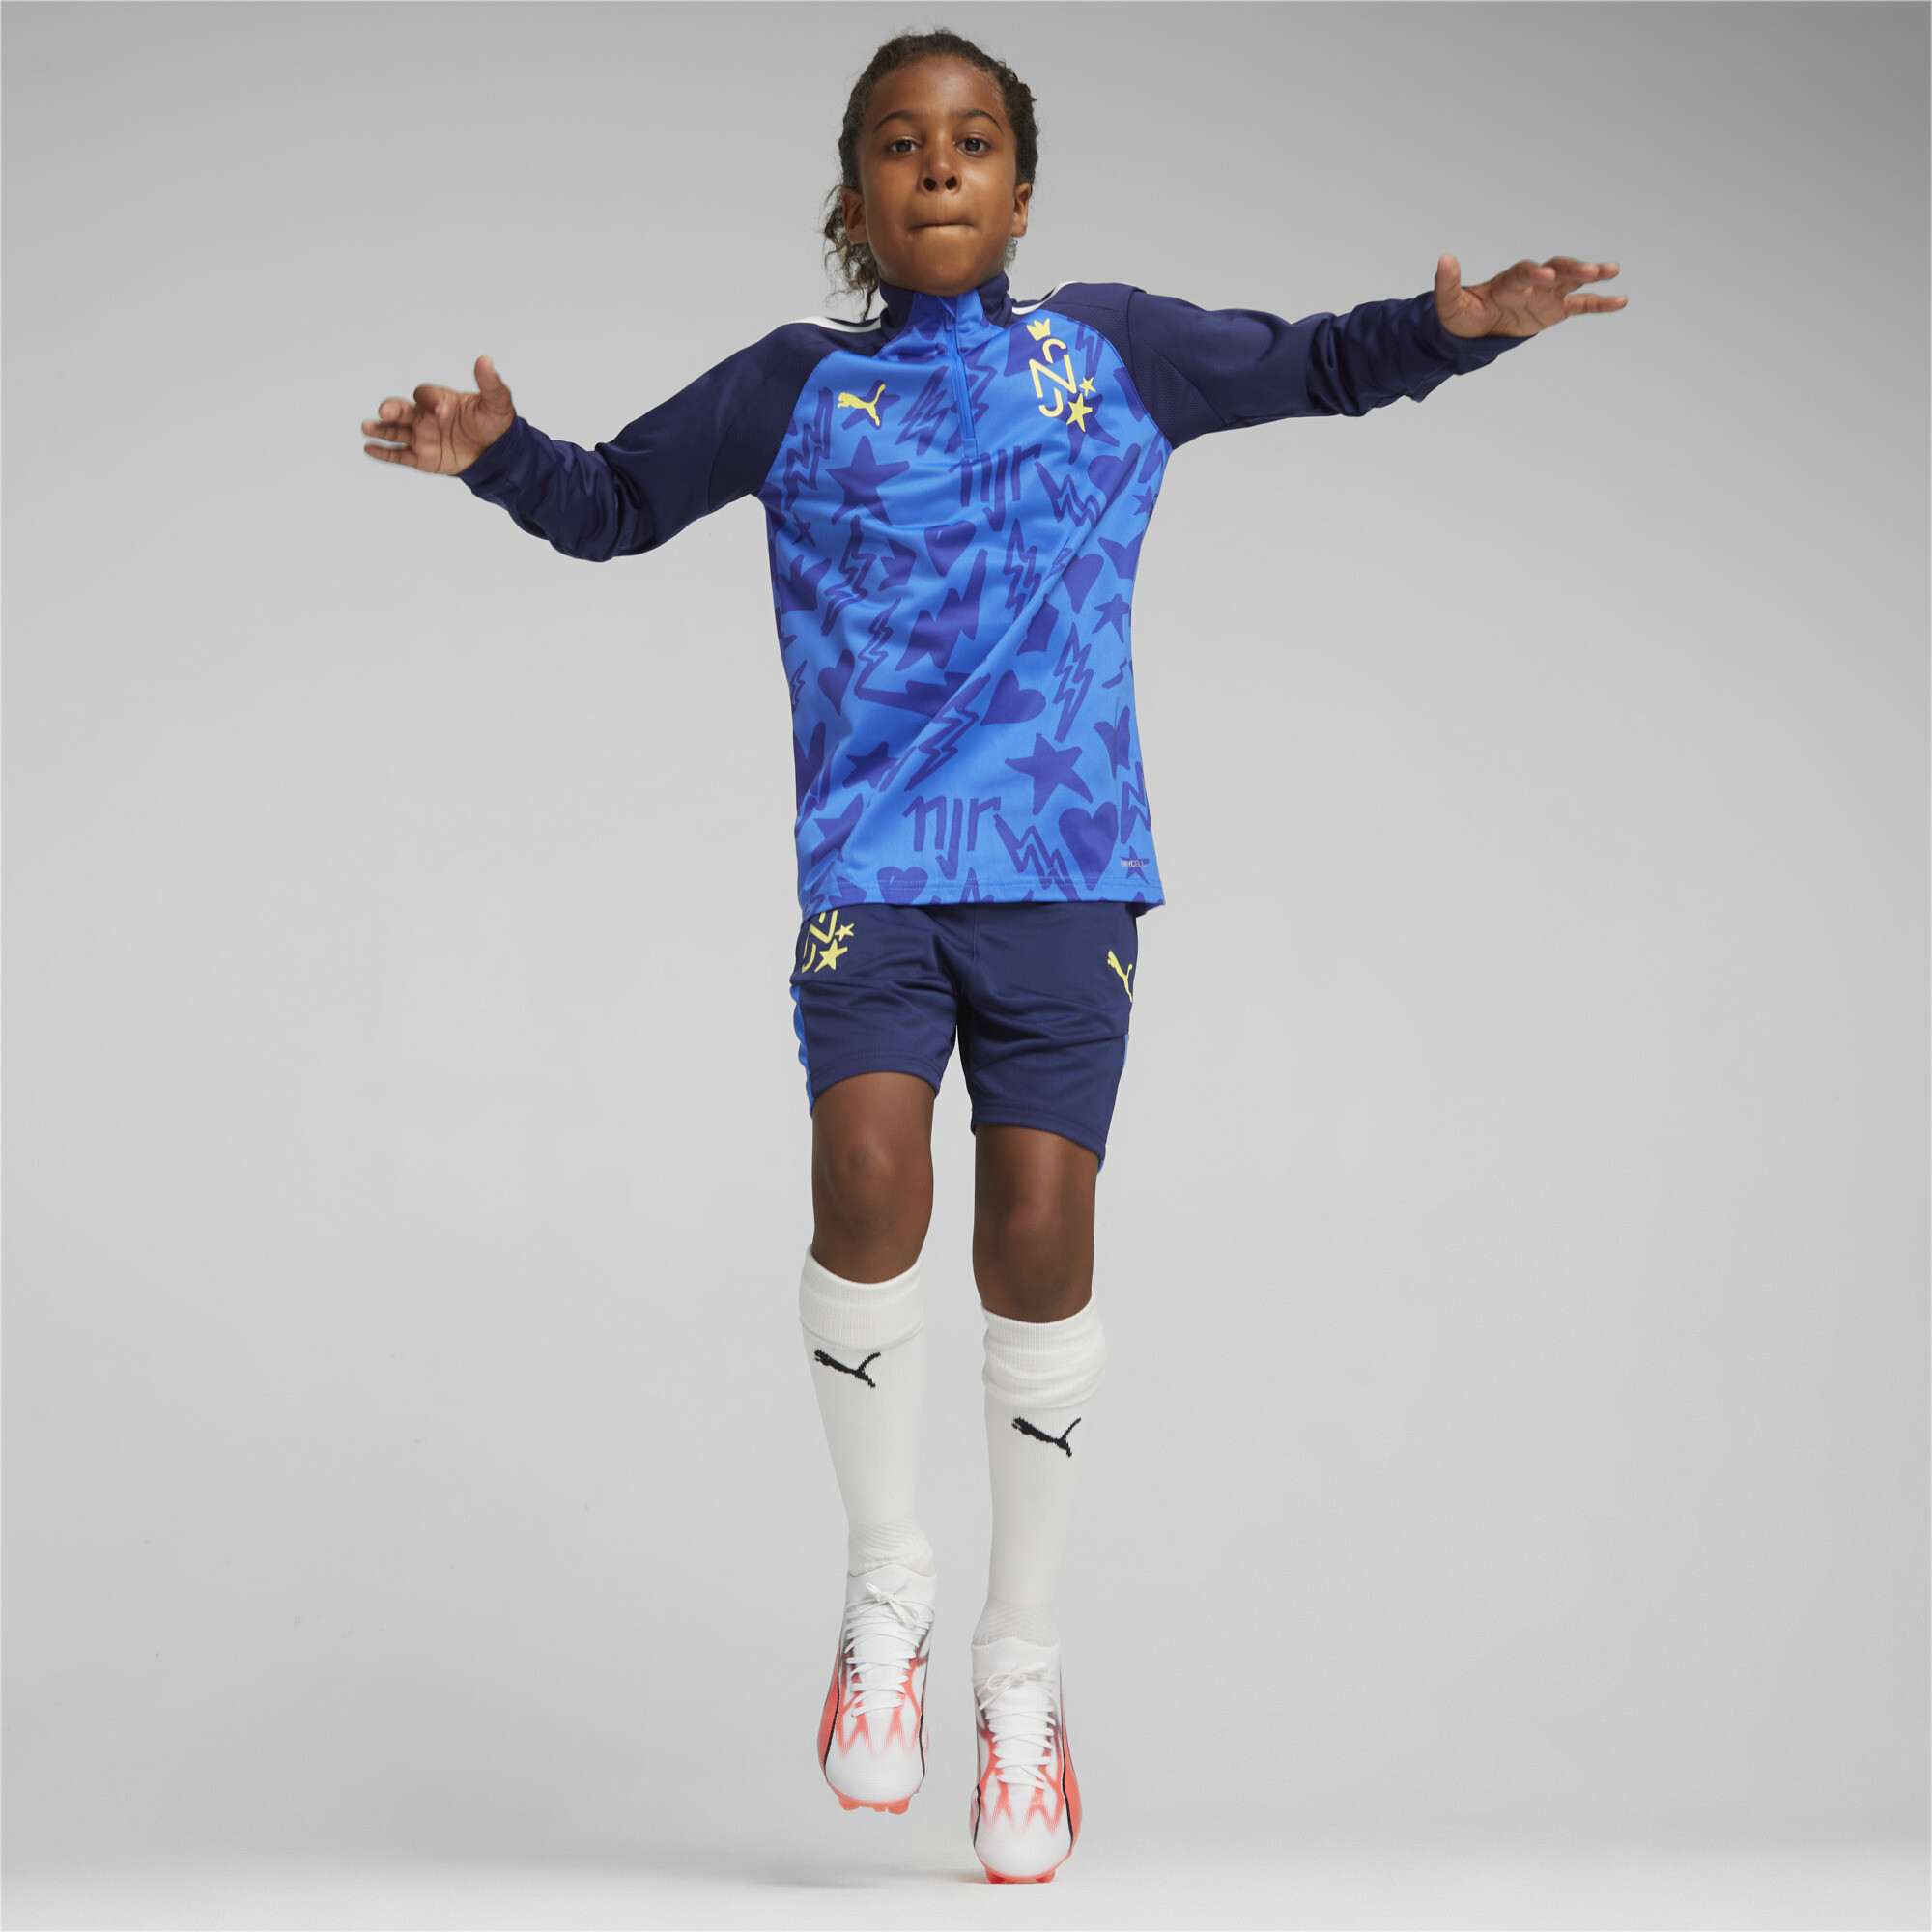 PUMA Neymar Jr Football Track Jacket In Blue, Size 7-8 Youth